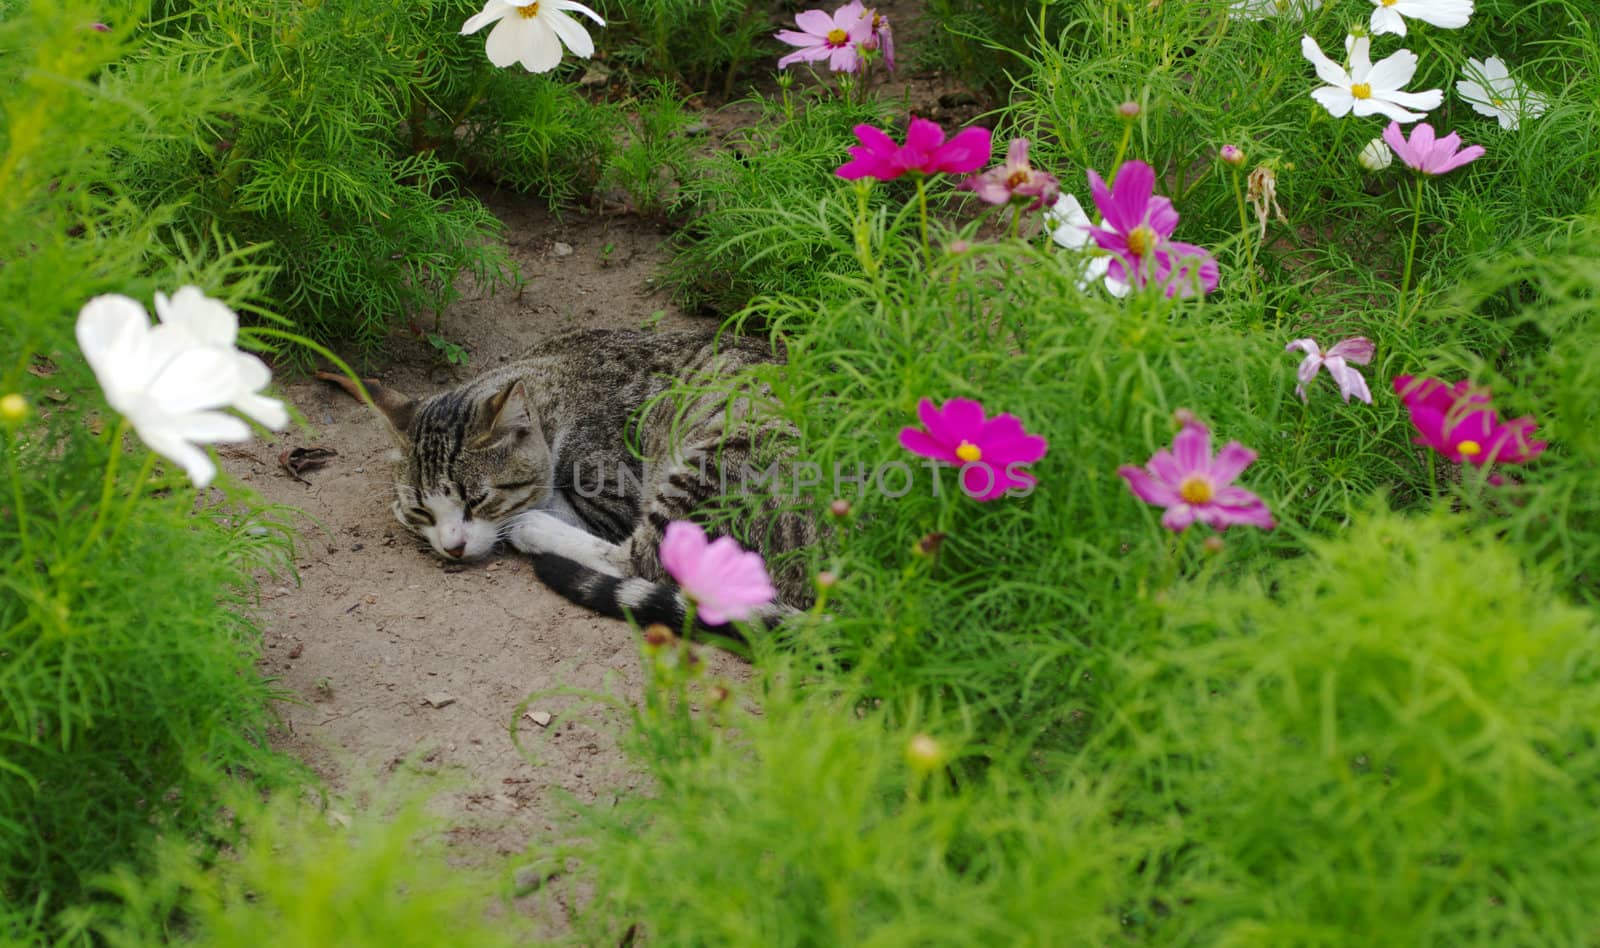 Stray Cat Sleeping in between Flowers by sven